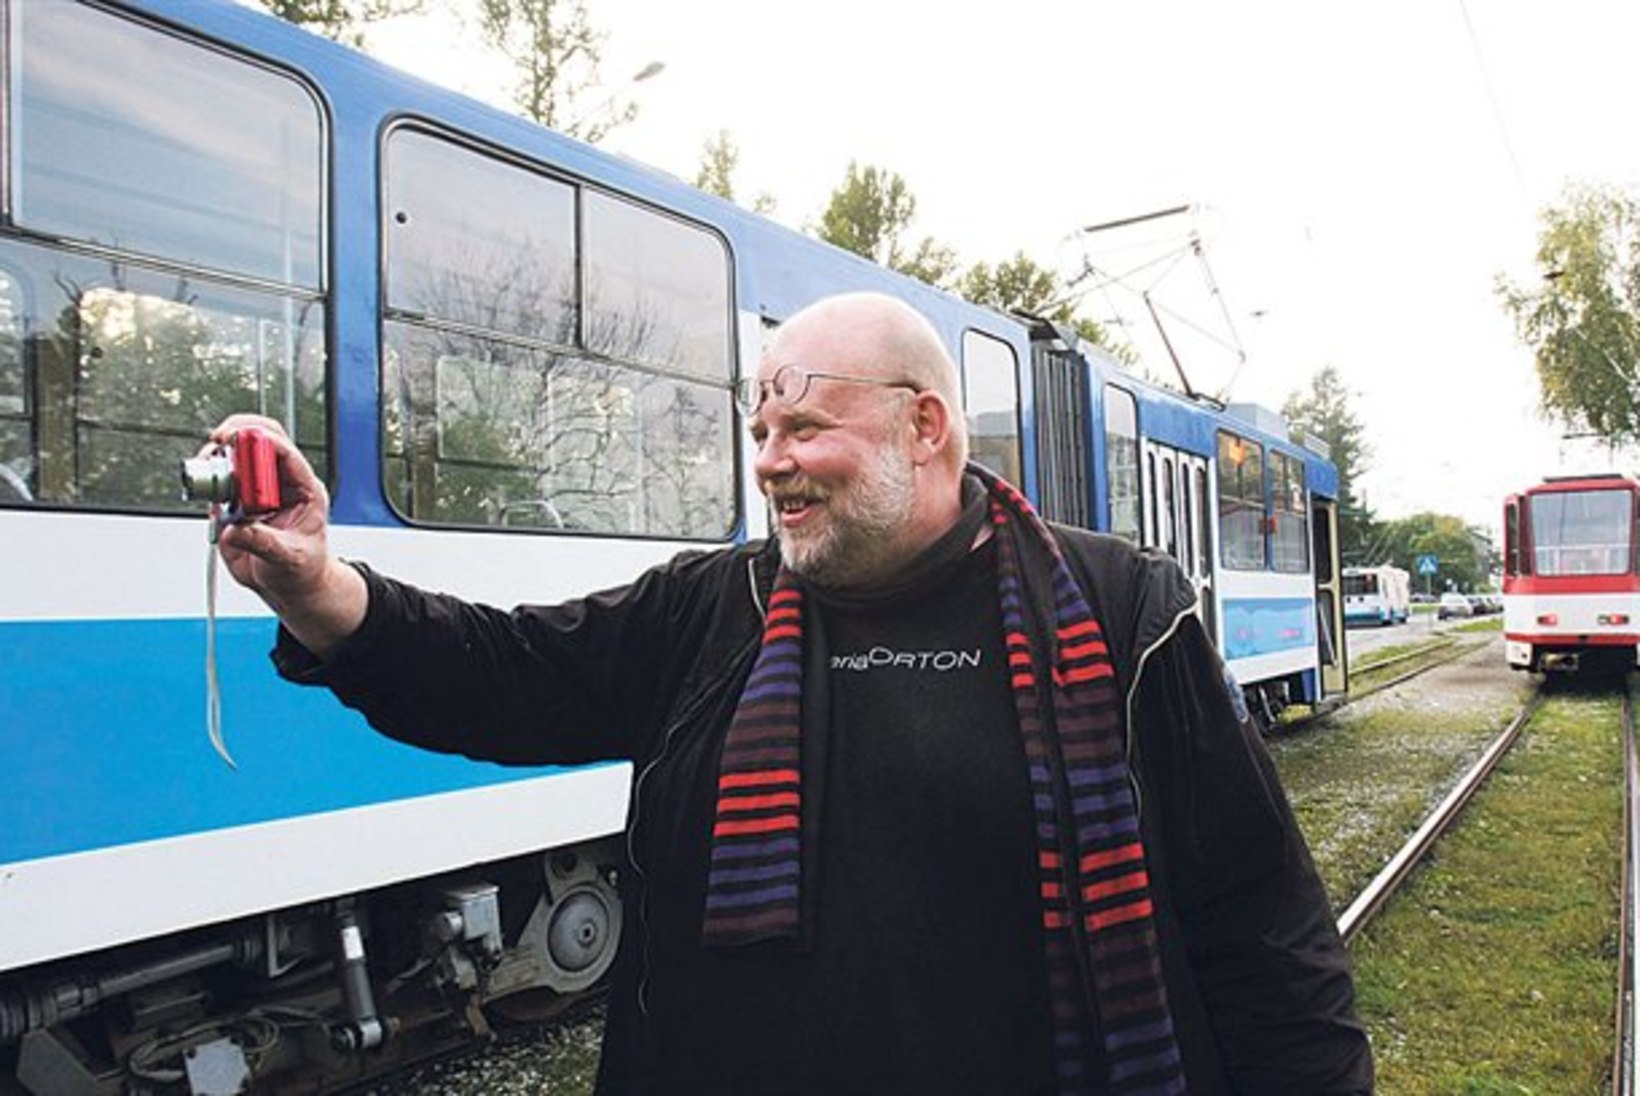 Soome kirjanik Kantokorpi vormistas Tallinna trammiliinidest raamatu